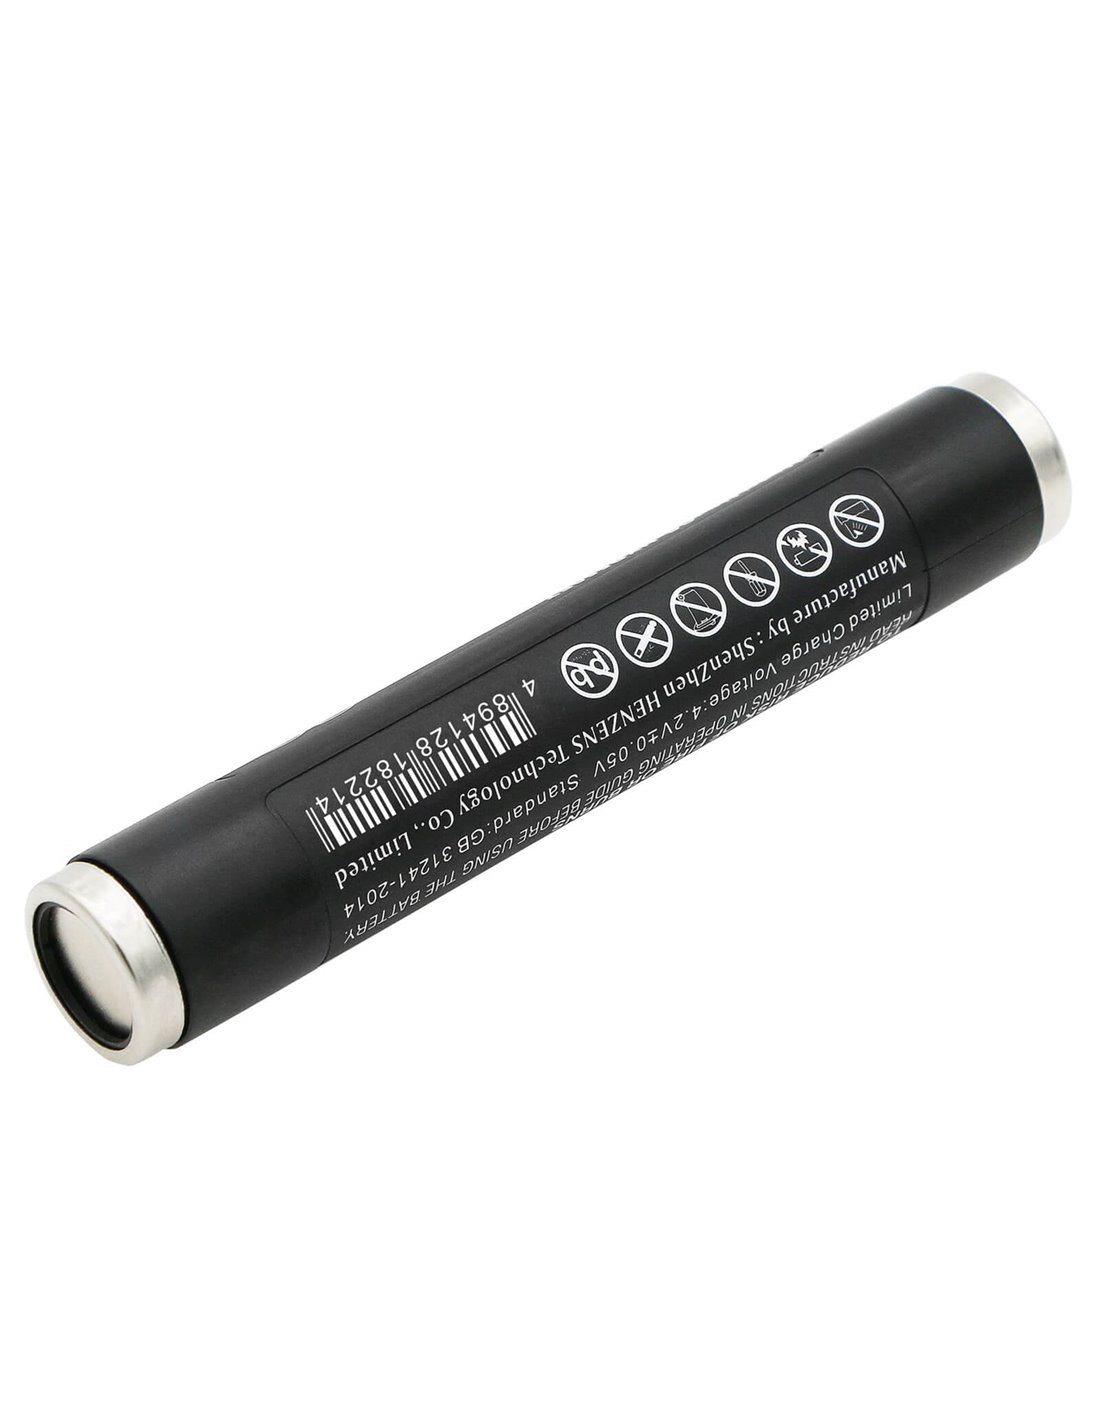 3.7V, Li-ion, 6800mAh, Battery fits Nightstick 9500, 9600, 9900, 25.16Wh